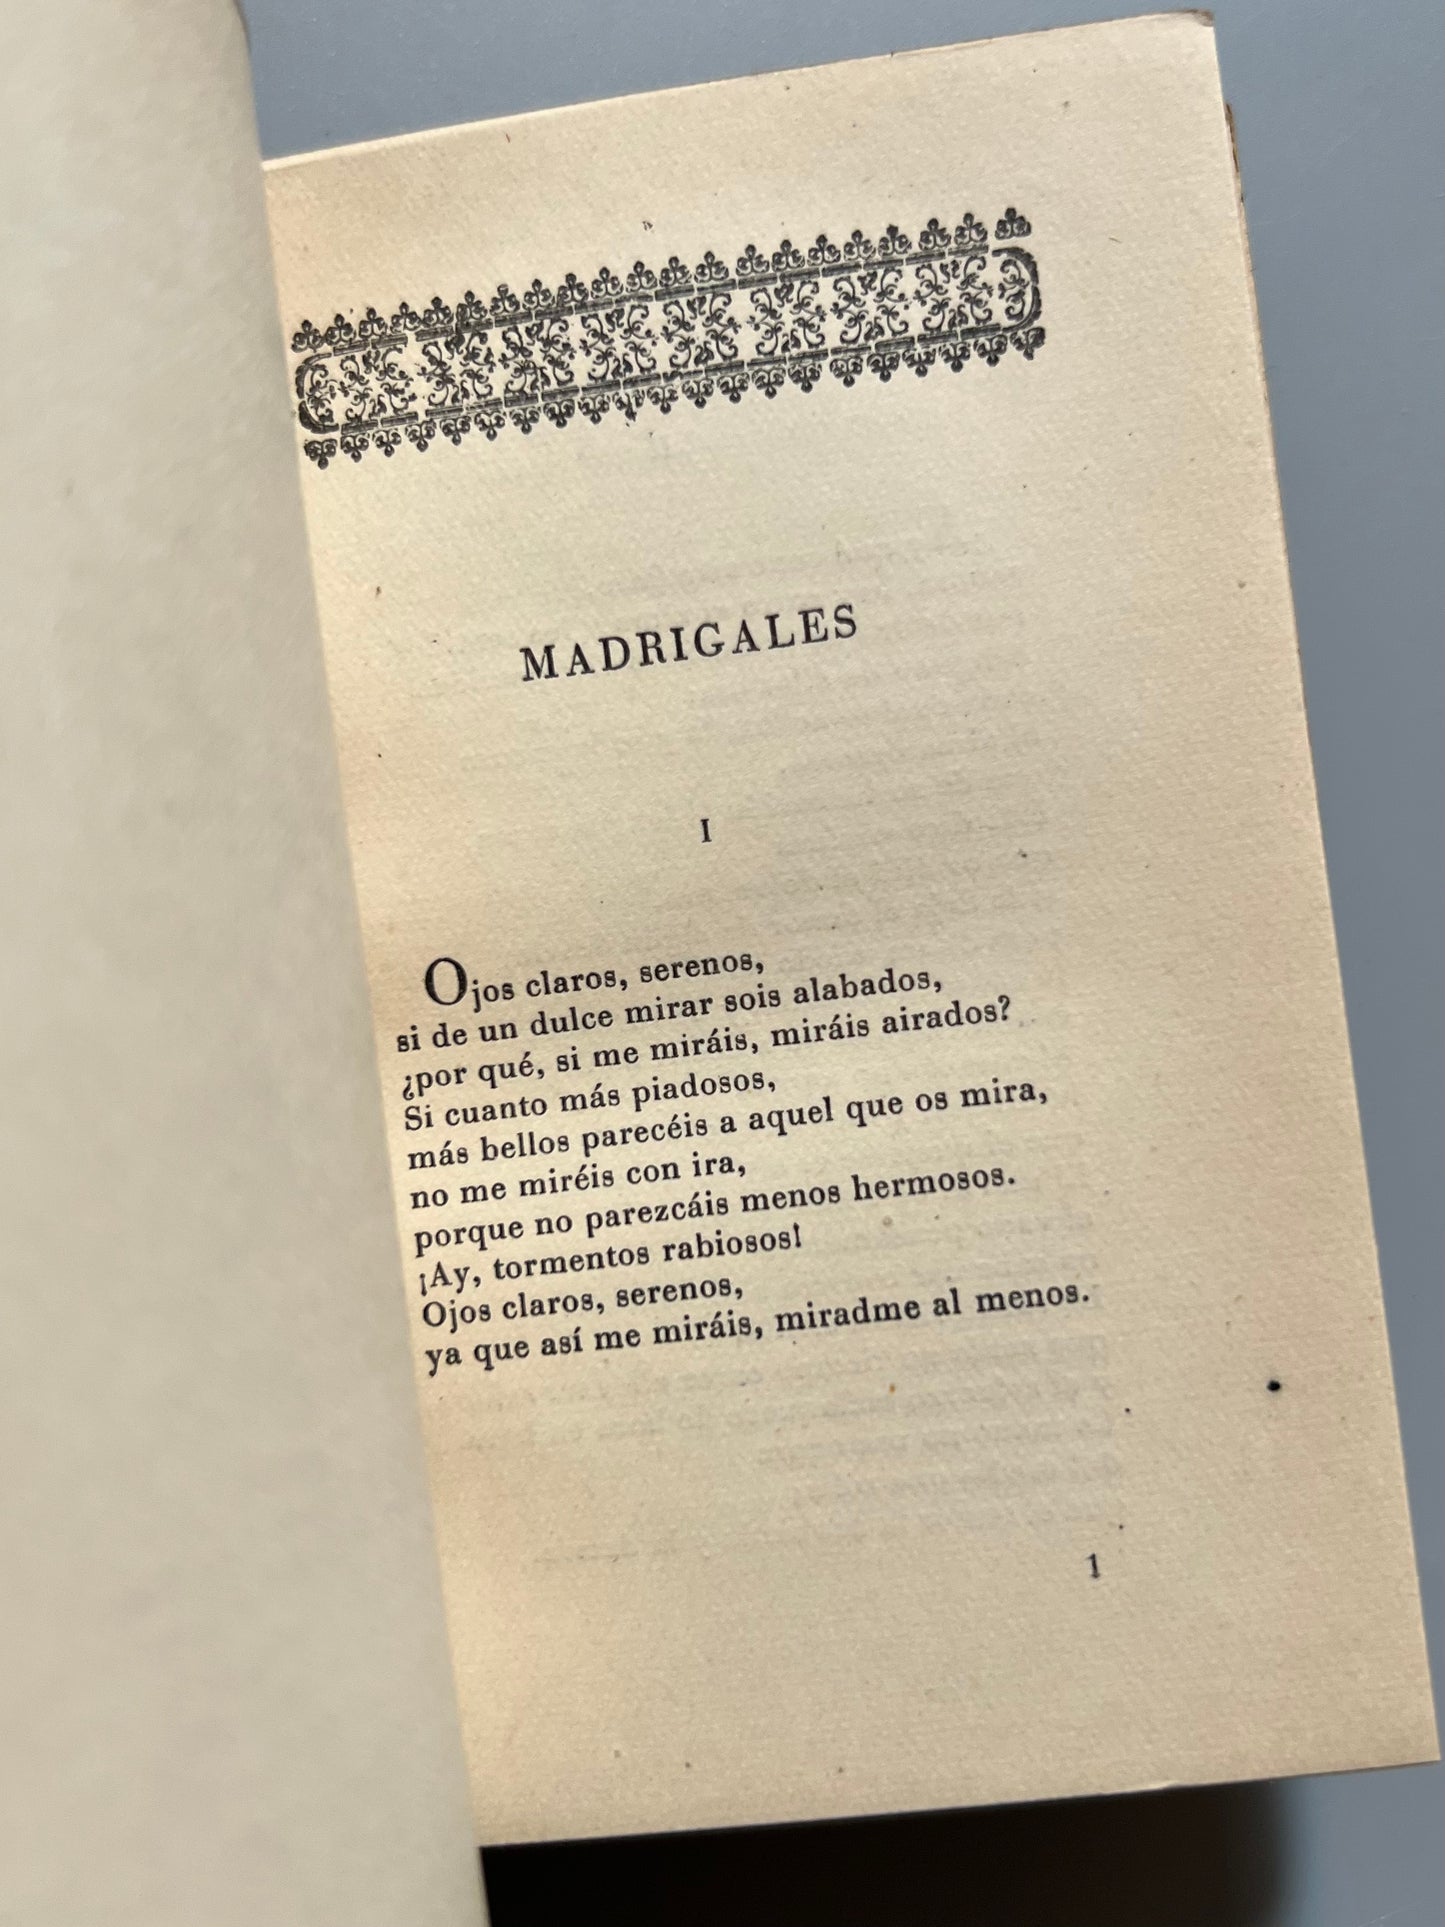 Madrigales, sonetos y otras composiciones, Gutierre de Cetina - Montaner y Simón, 1943